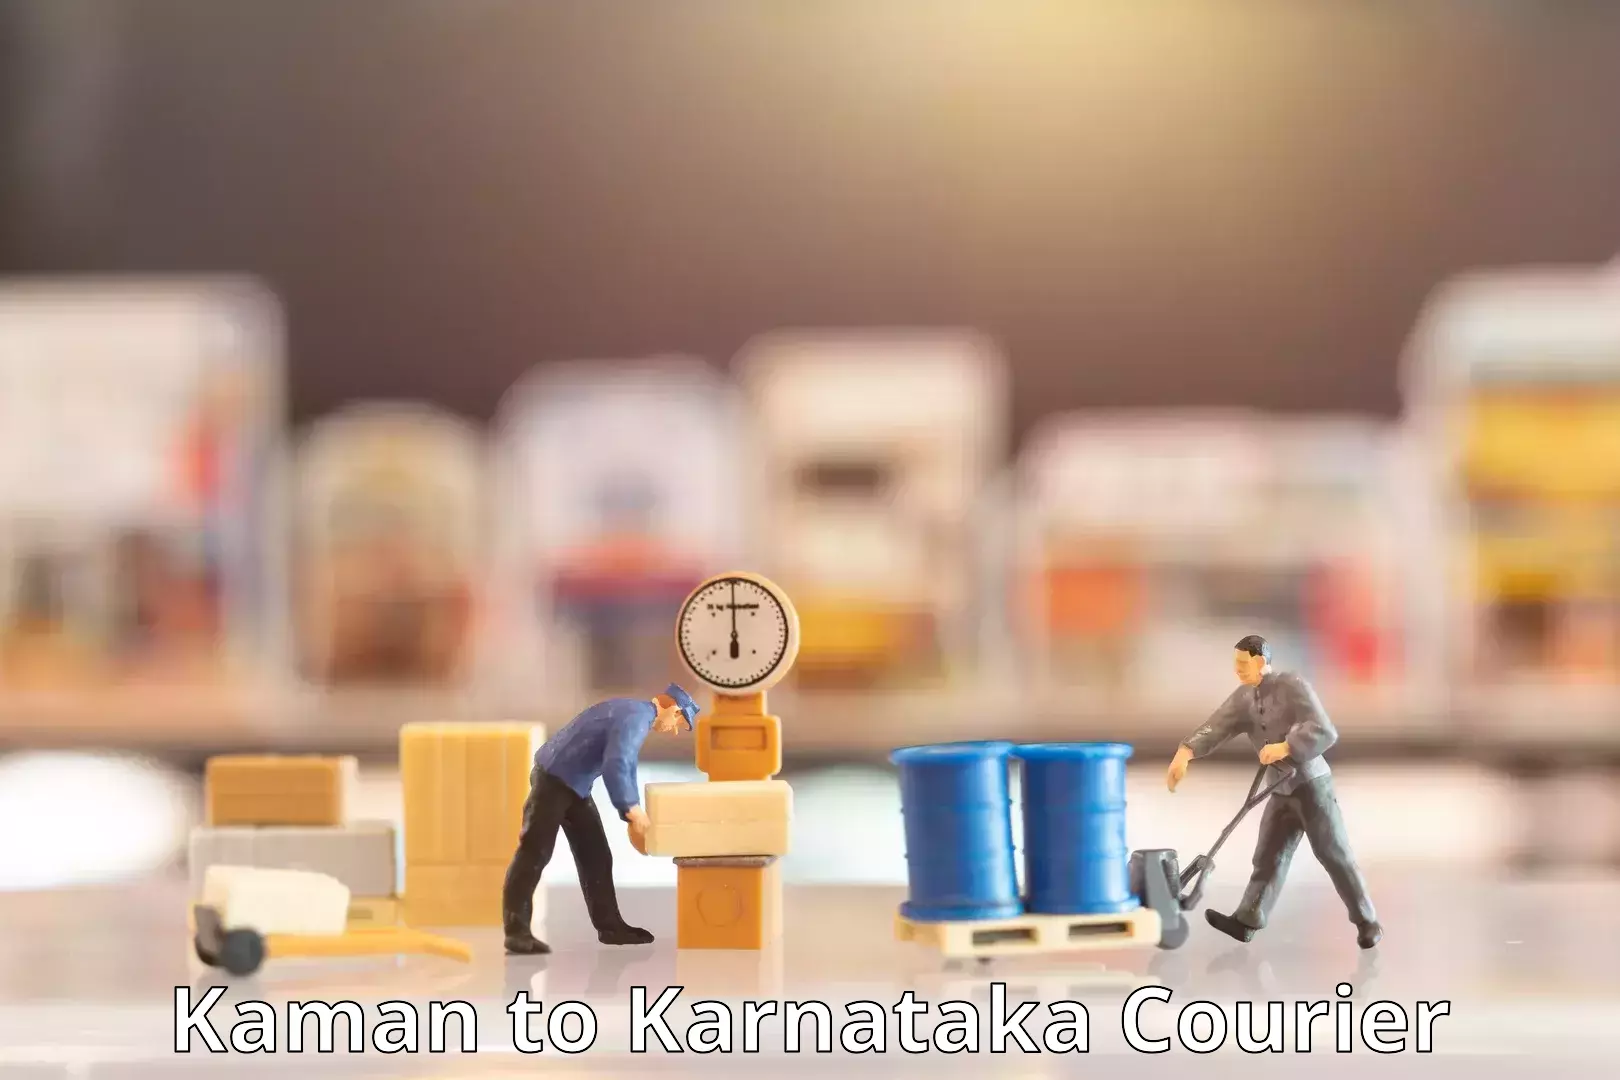 Global shipping solutions Kaman to Karnataka